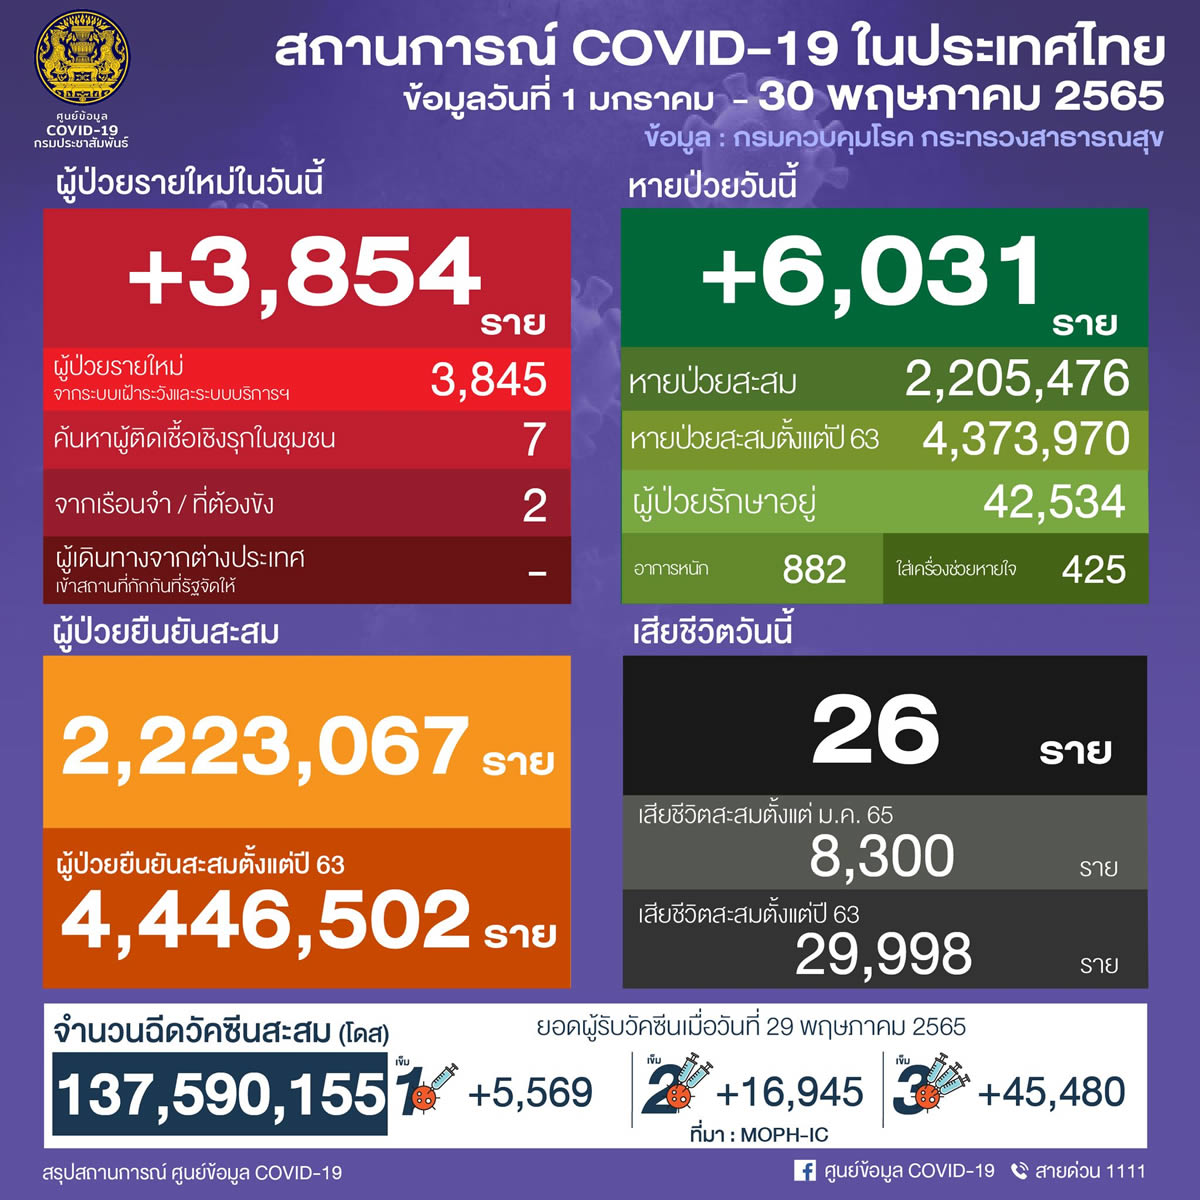 タイ 3,854人陽性 26人死亡／バンコク 1,655人陽性／コンケーン 101人陽性／ブリラム 101人陽性［2022年5月30日発表］